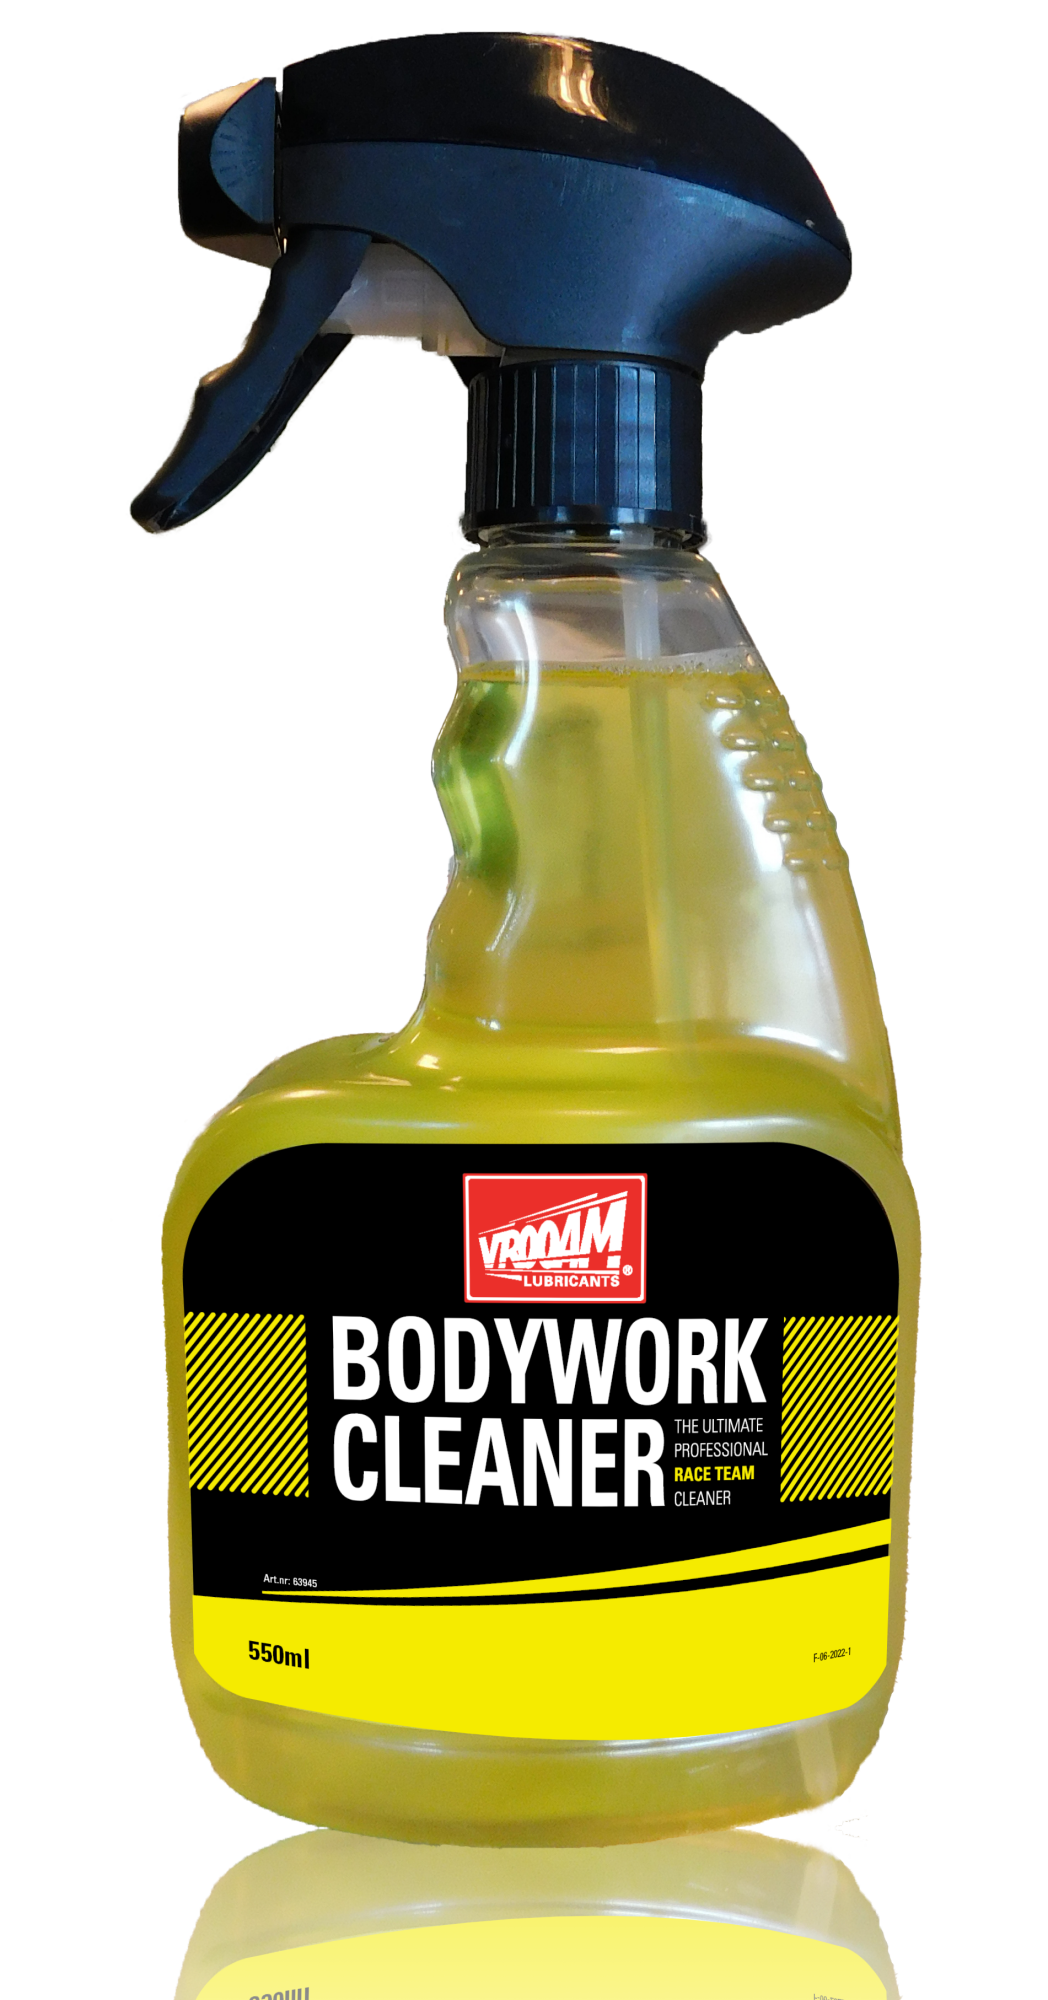 VROOAM bodywork cleaner